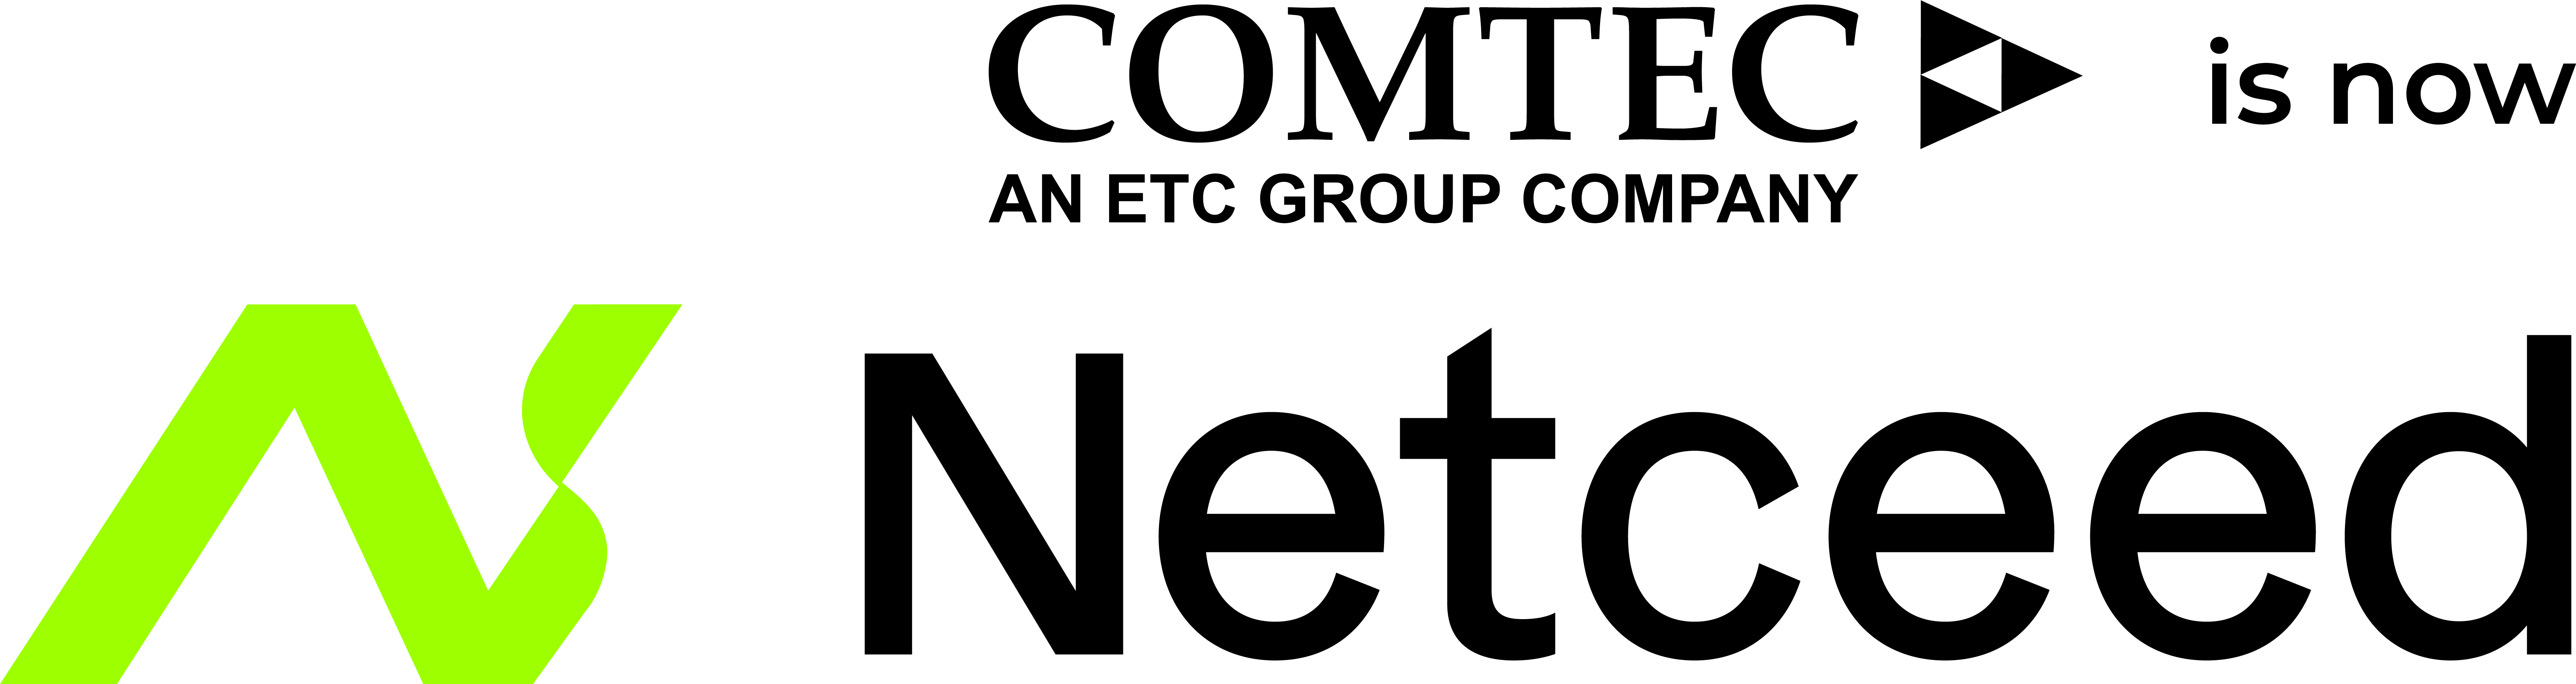 Comtec logo